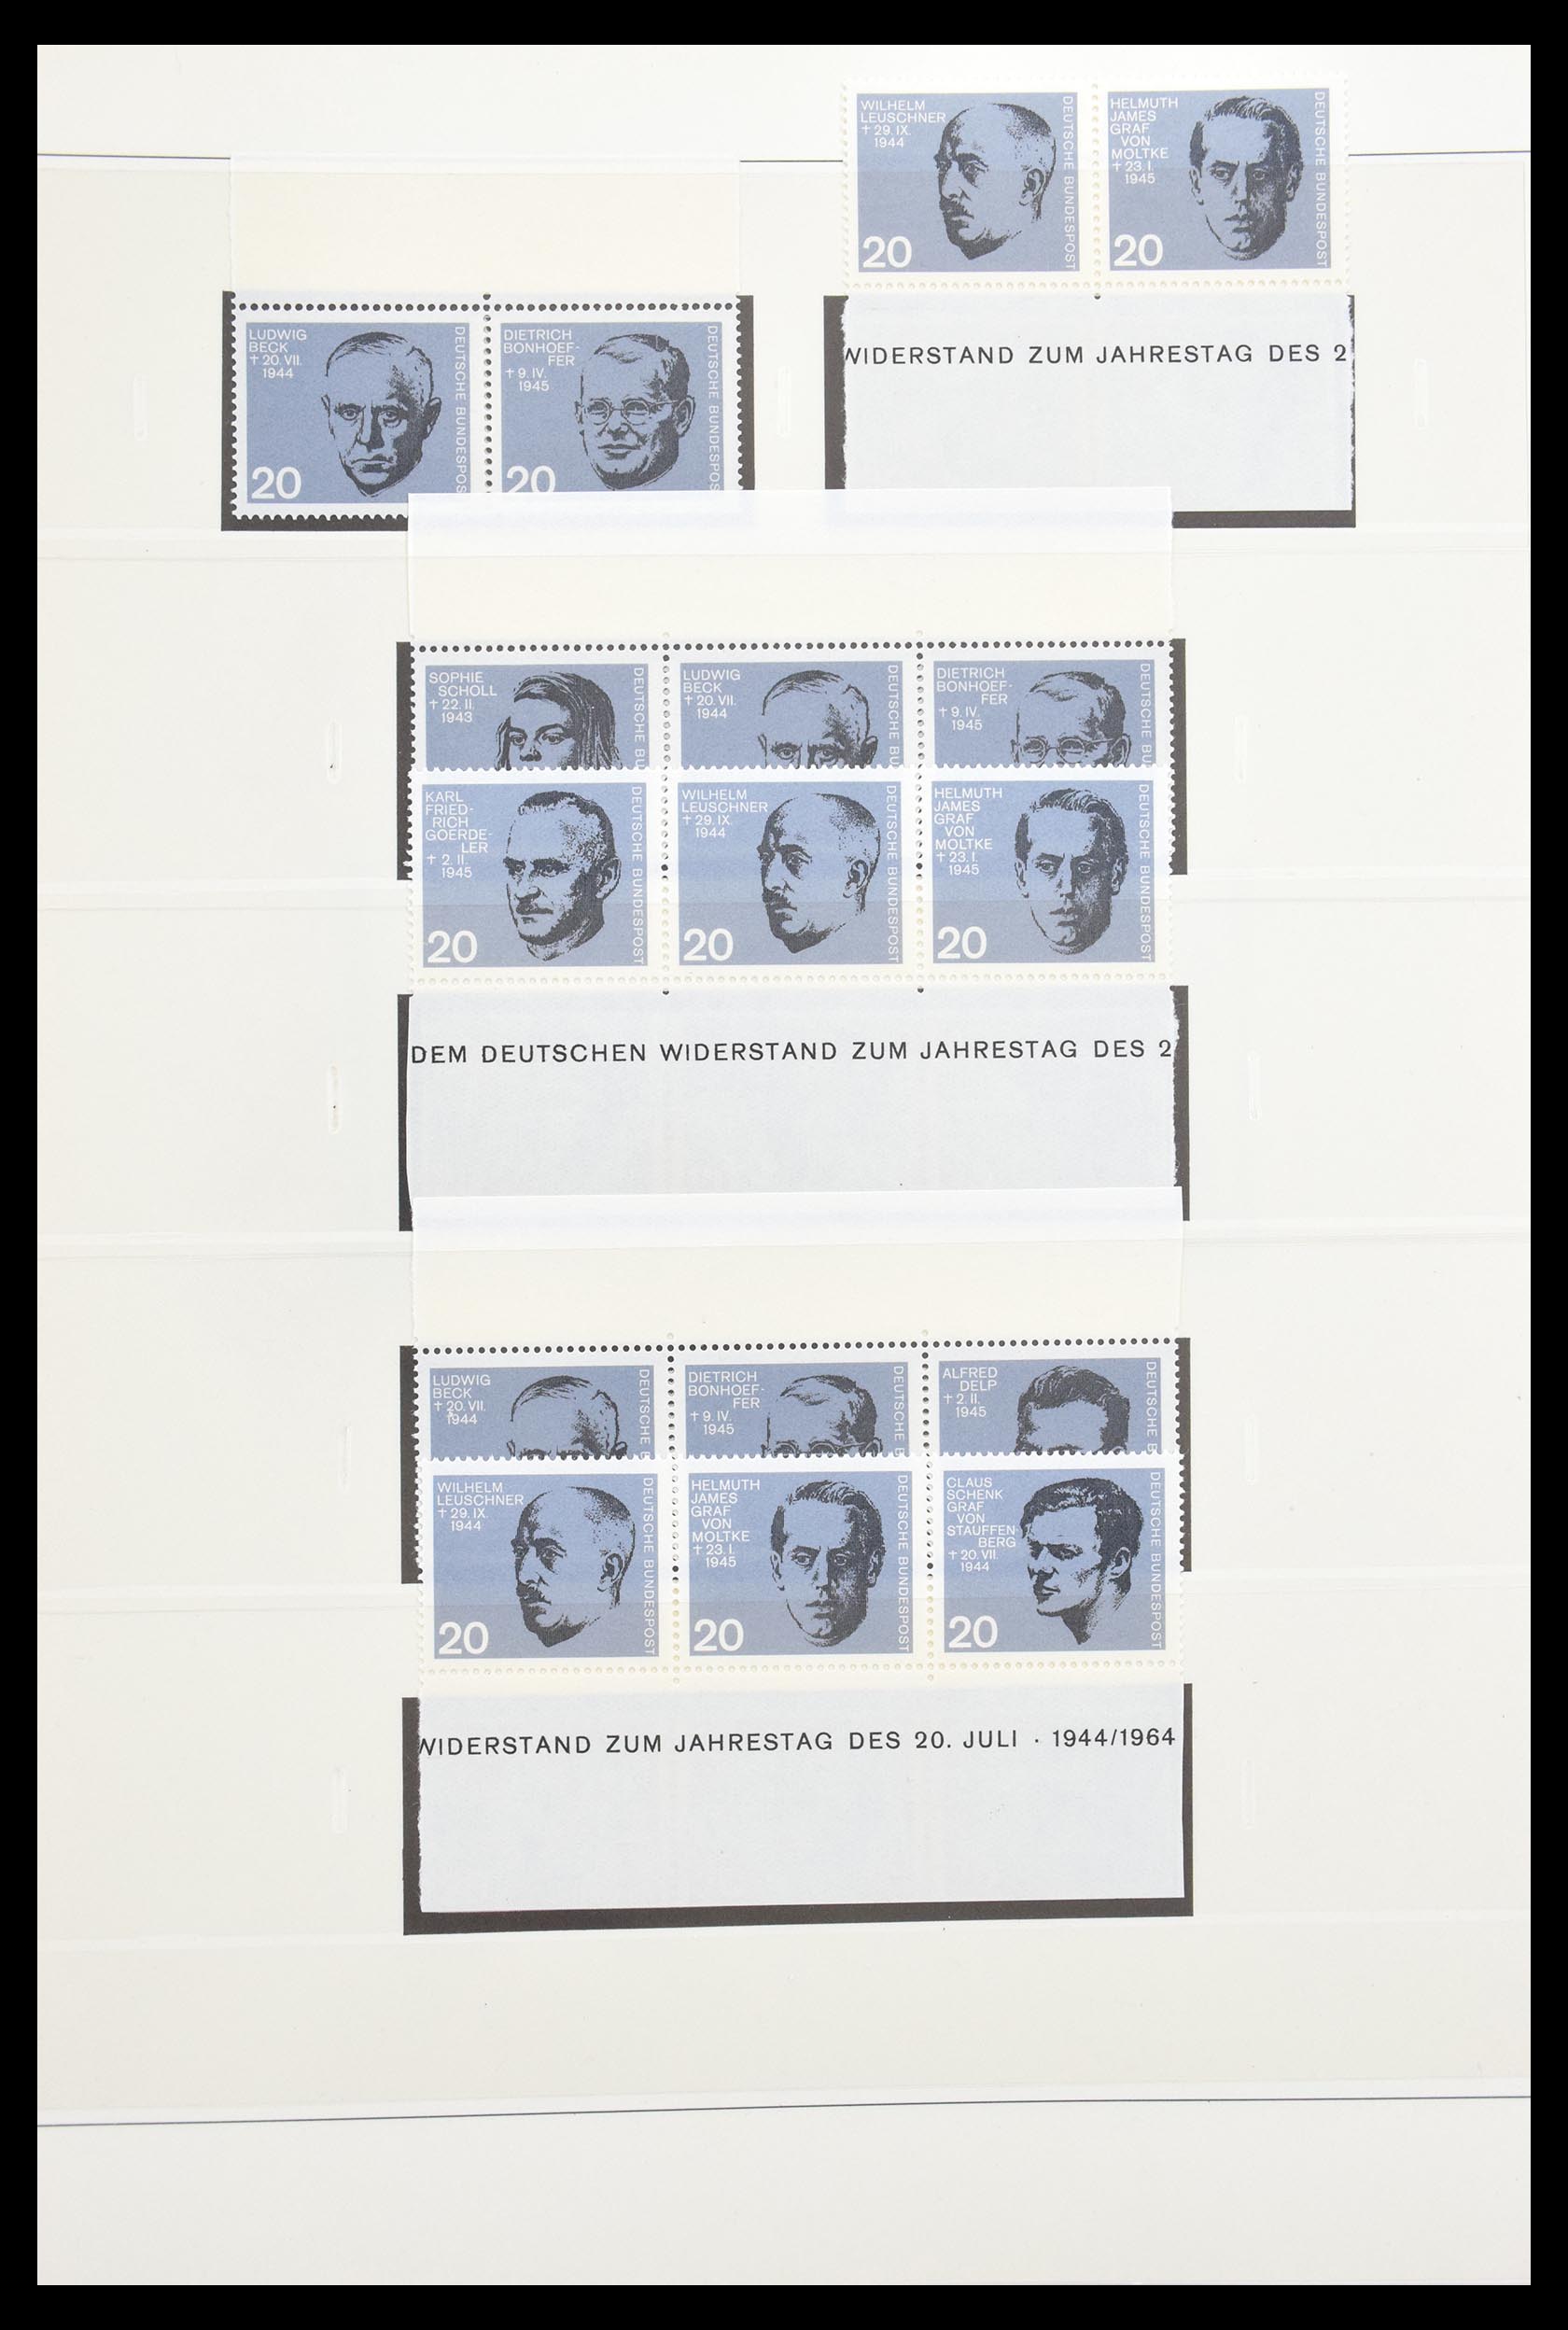 30605 021 - 30605 Bundespost combinations 1951-1974.